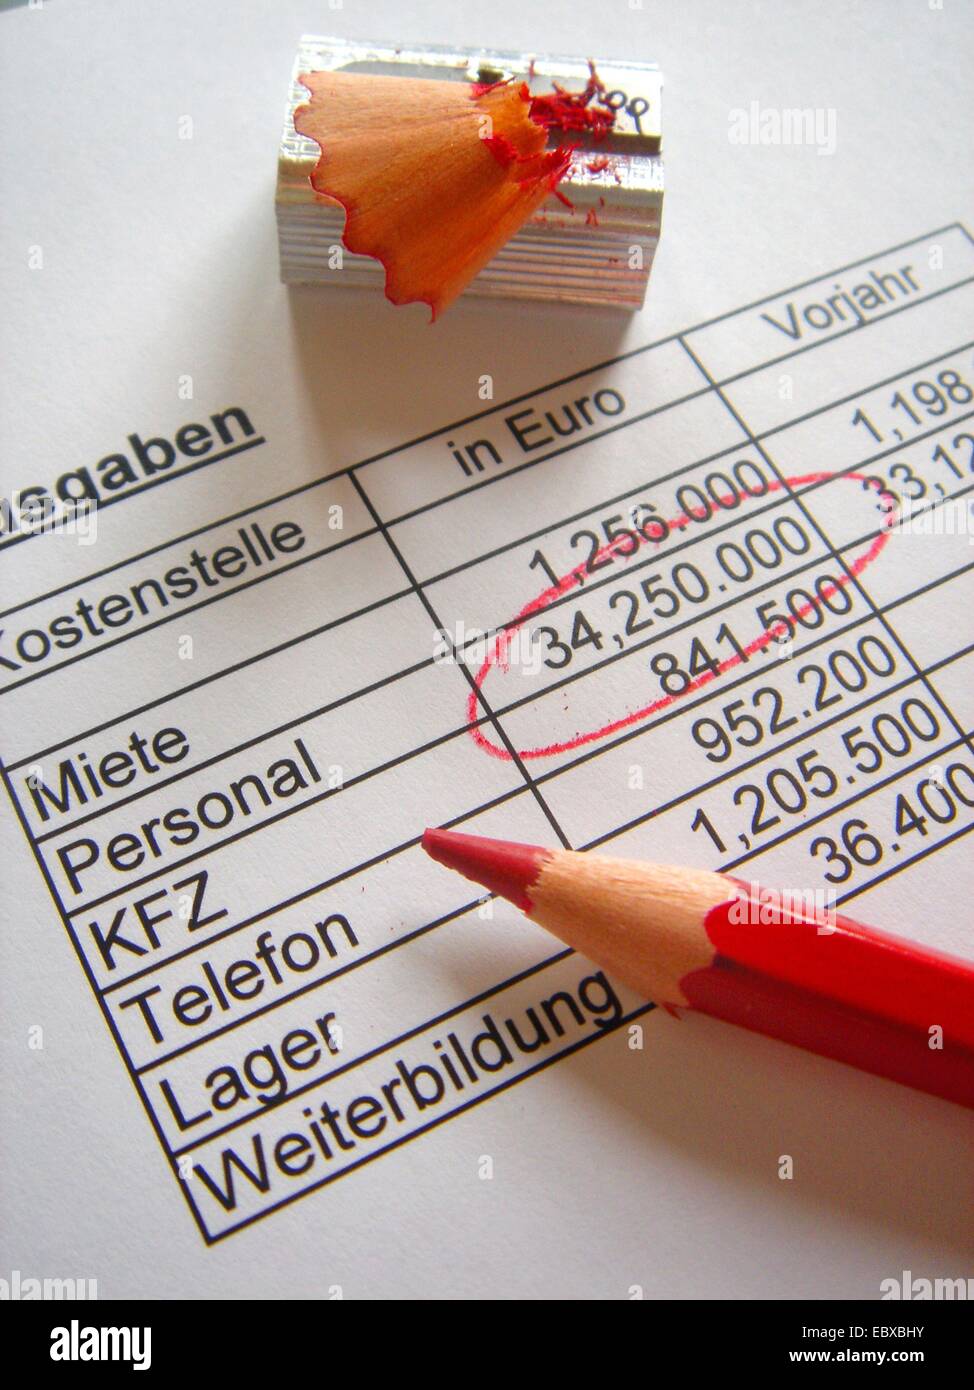 Los costos de personal marcado con lápiz rojo en un balance de gastos de empresa Foto de stock